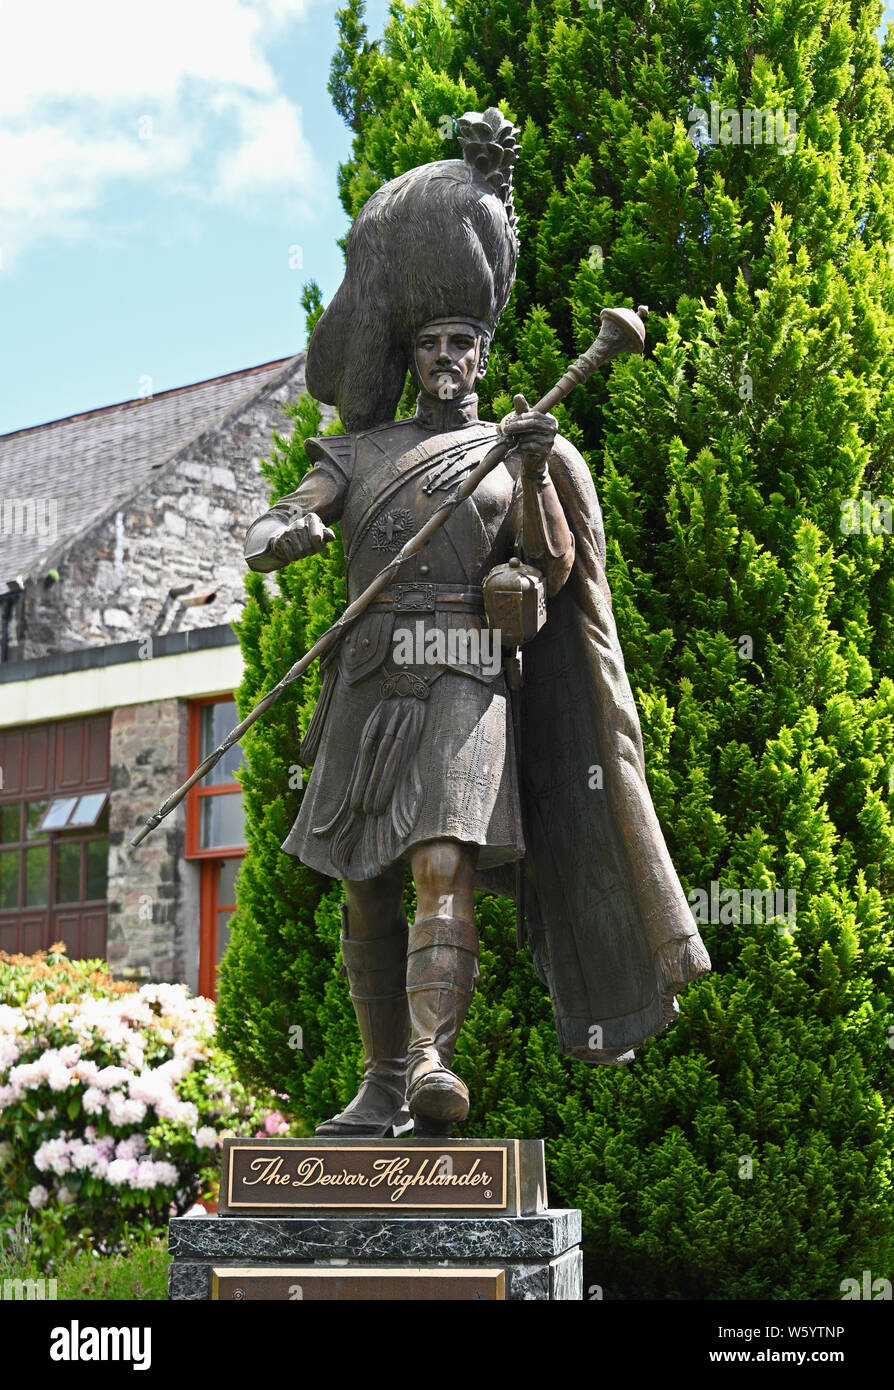 Die dewar Highlander, eingetragene Marke Statue. Dewar's Aberfeldy Whisky Distillery. Aberfeldy, Perth und Kinross, Schottland, Großbritannien, Europa Stockfoto